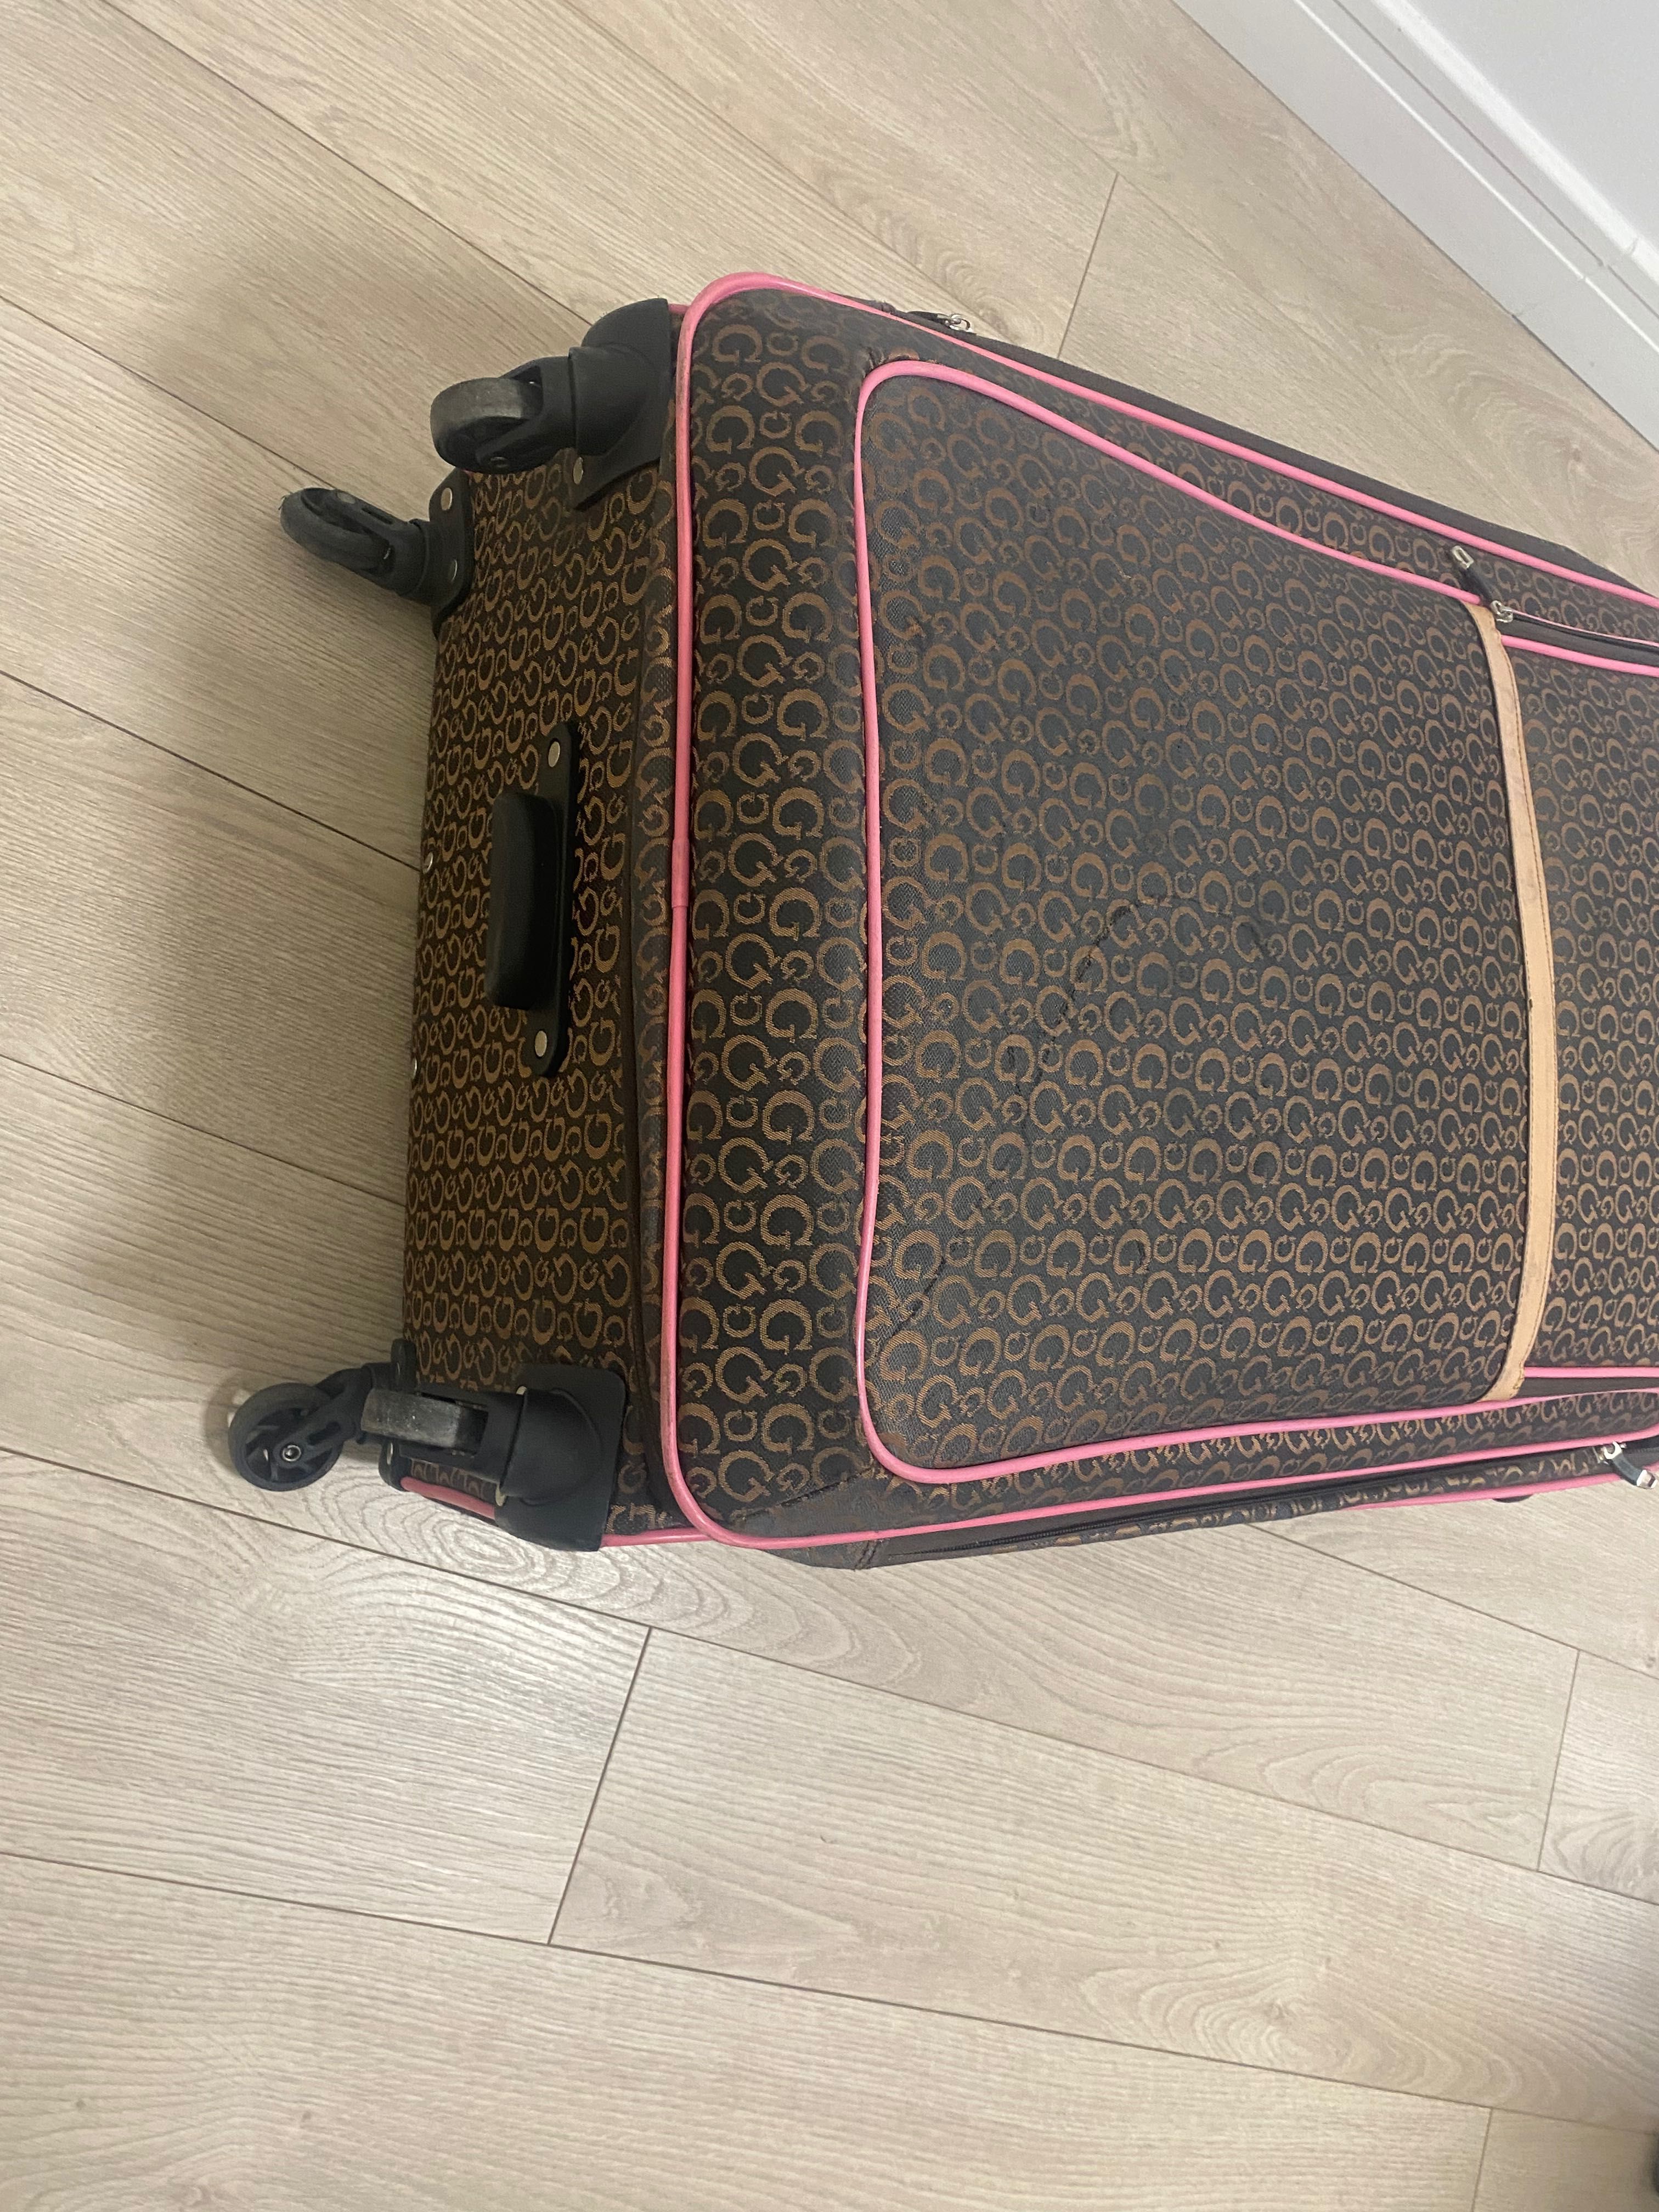 Bardzo duża walizka Guess do luku bagażowego 70x 60 cm bez kółek